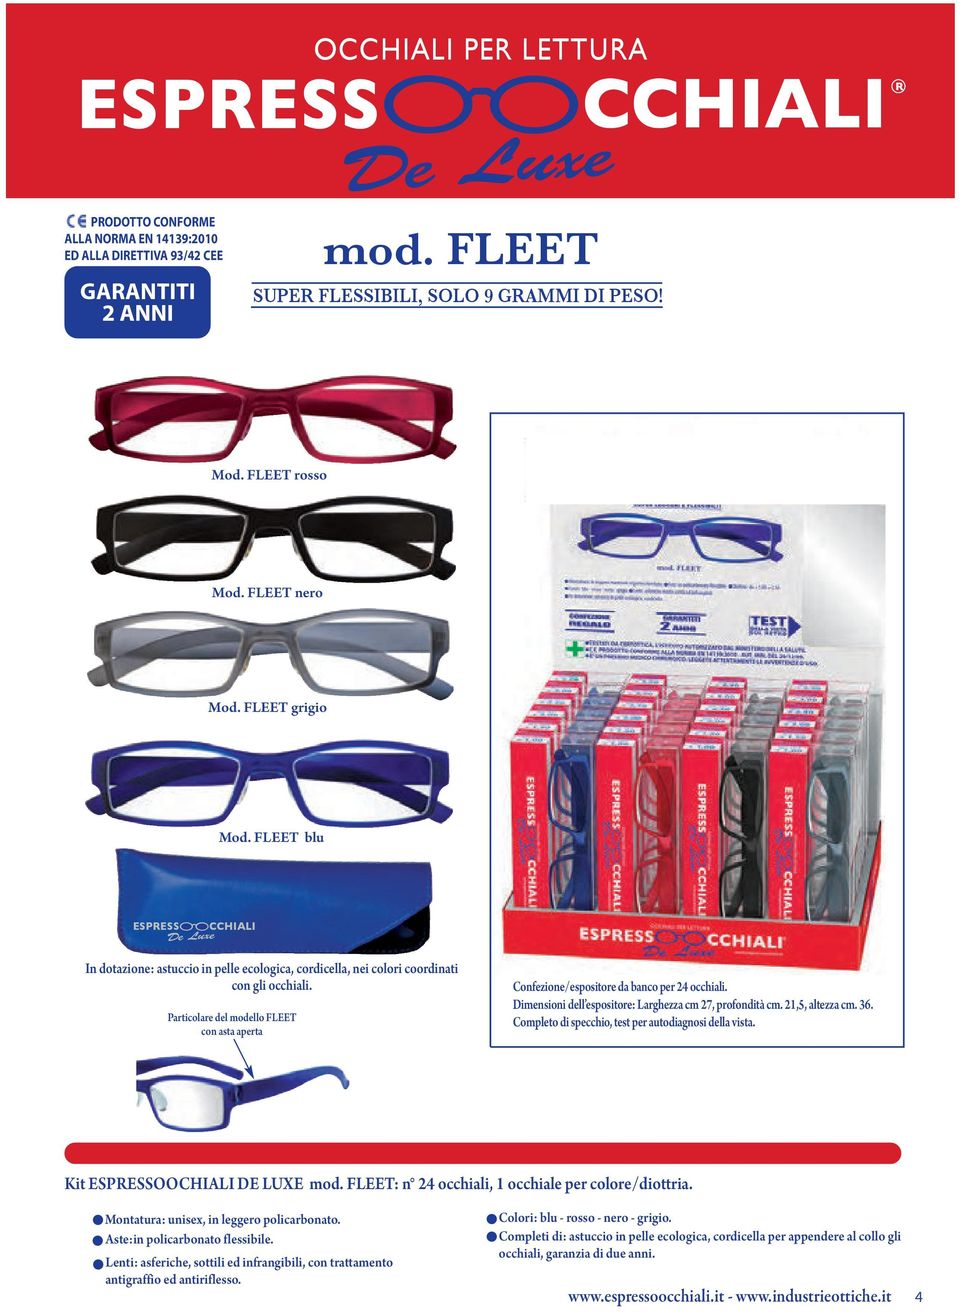 Particolare del modello FLEET con asta aperta Confezione/espositore da banco per 24 occhiali. Dimensioni dell espositore: Larghezza cm 27, profondità cm. 21,5, altezza cm. 36.